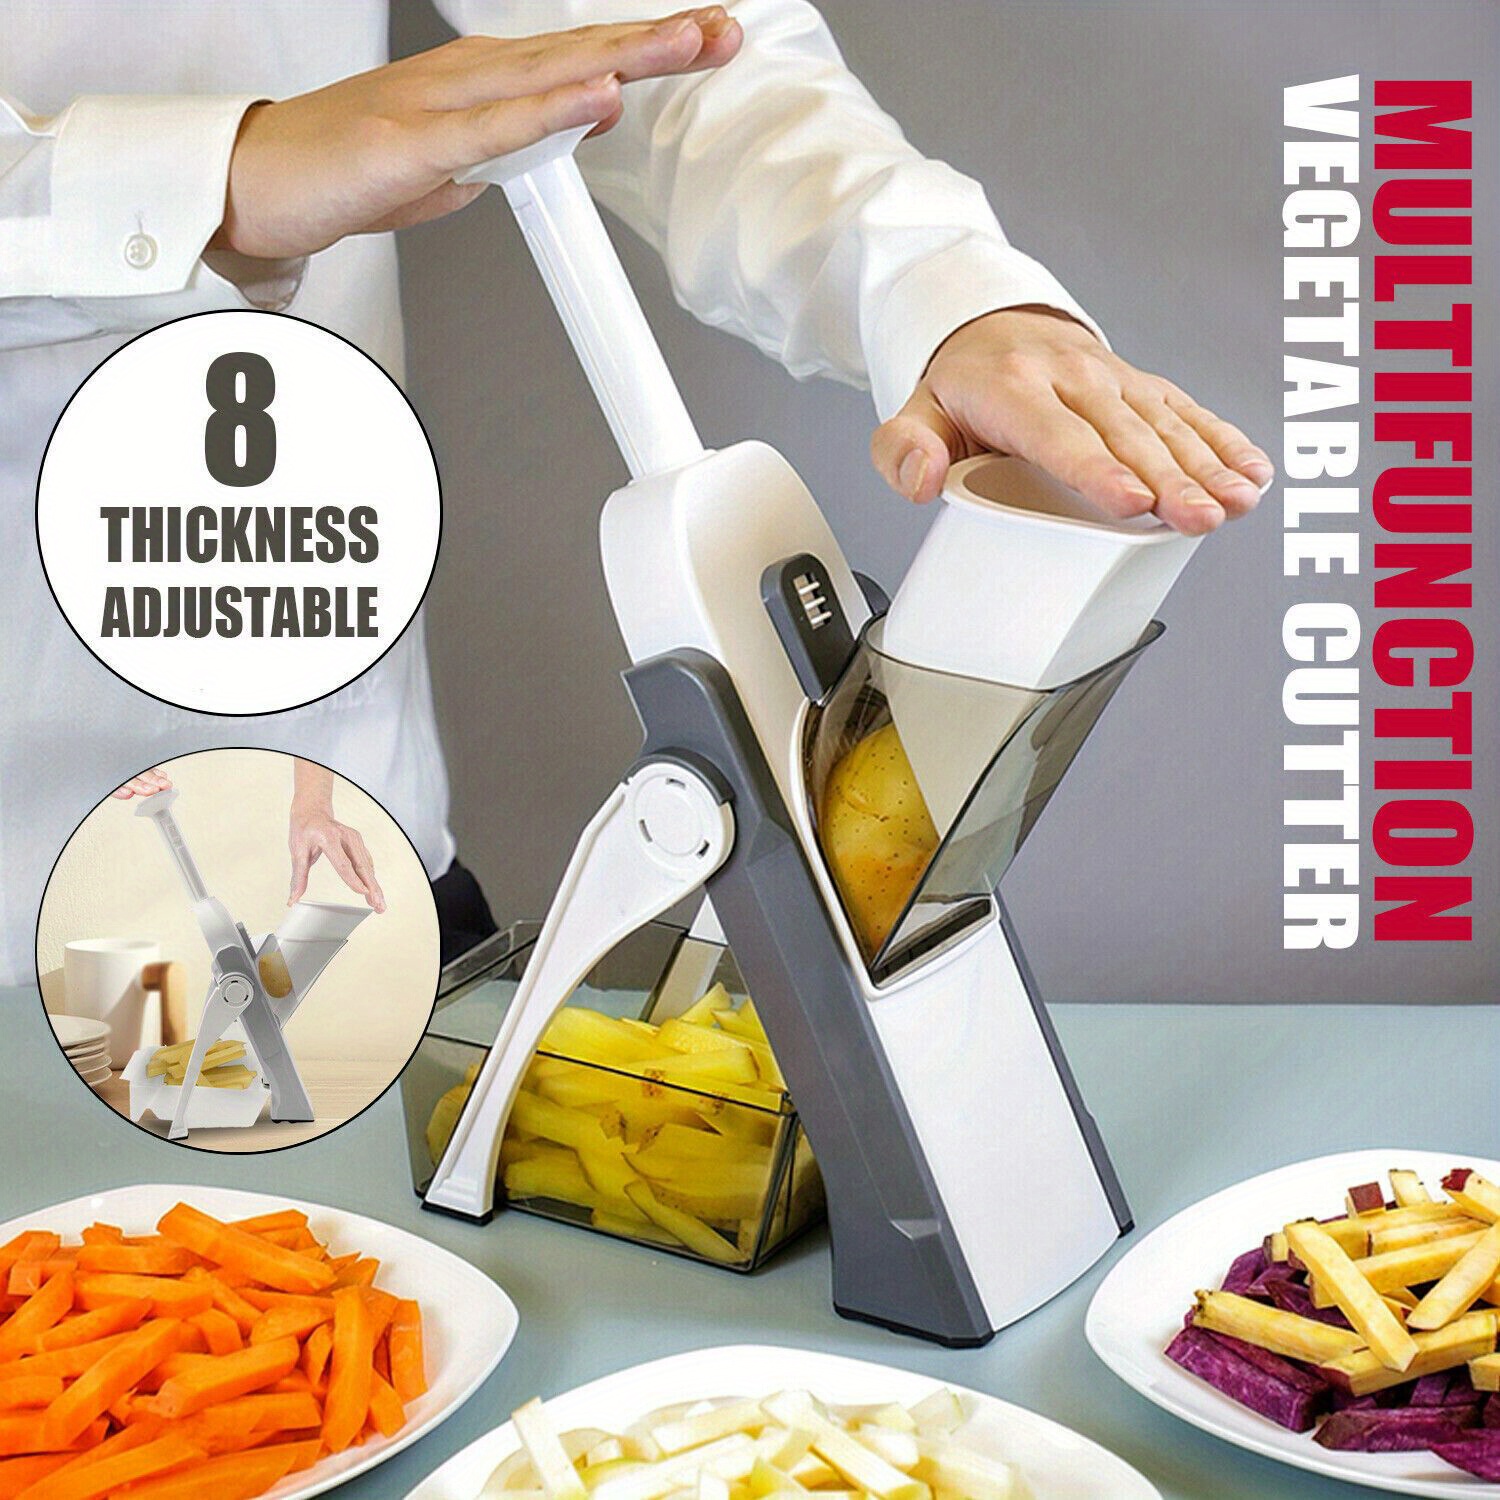 Kitchen + Home Food Safety Holder for Any Mandolin Slicer or